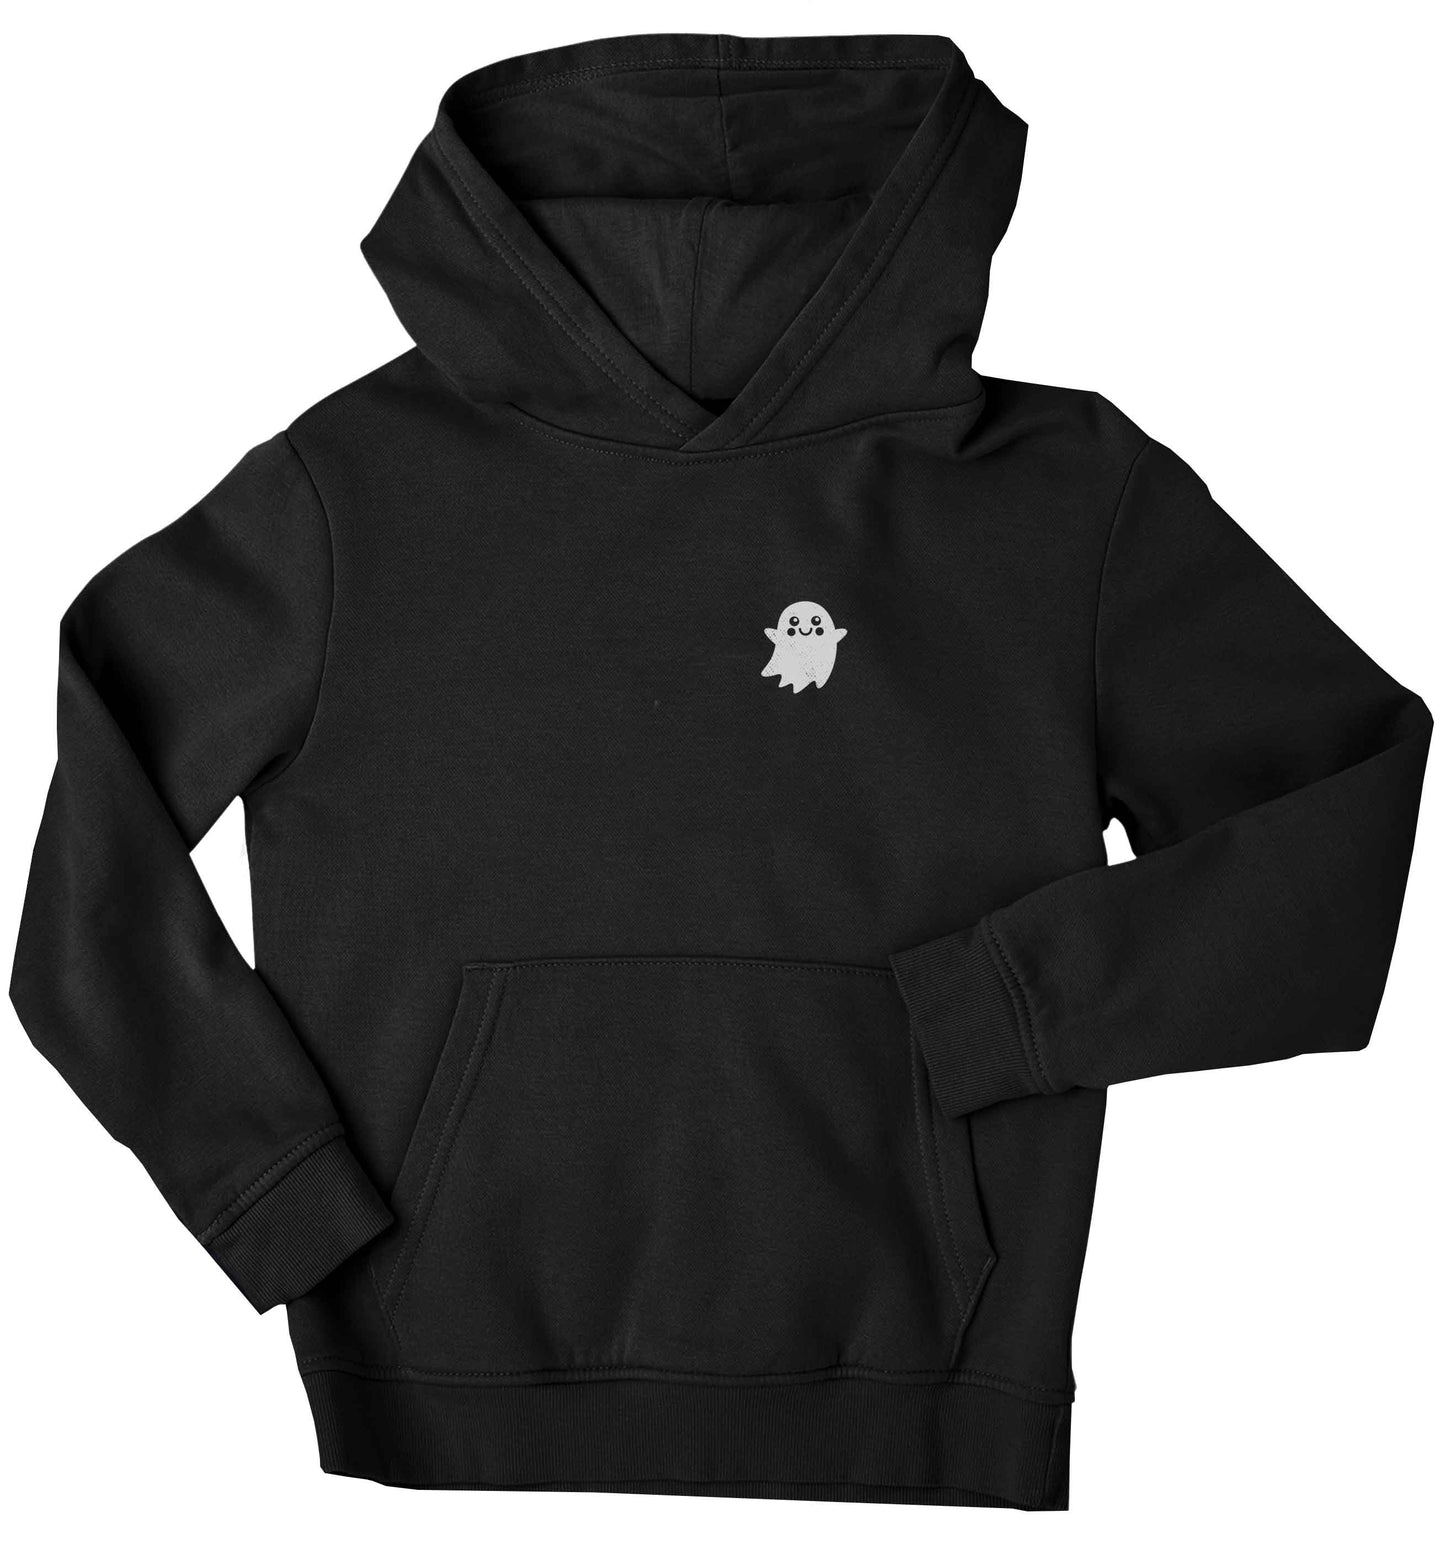 Pocket ghost children's black hoodie 12-13 Years